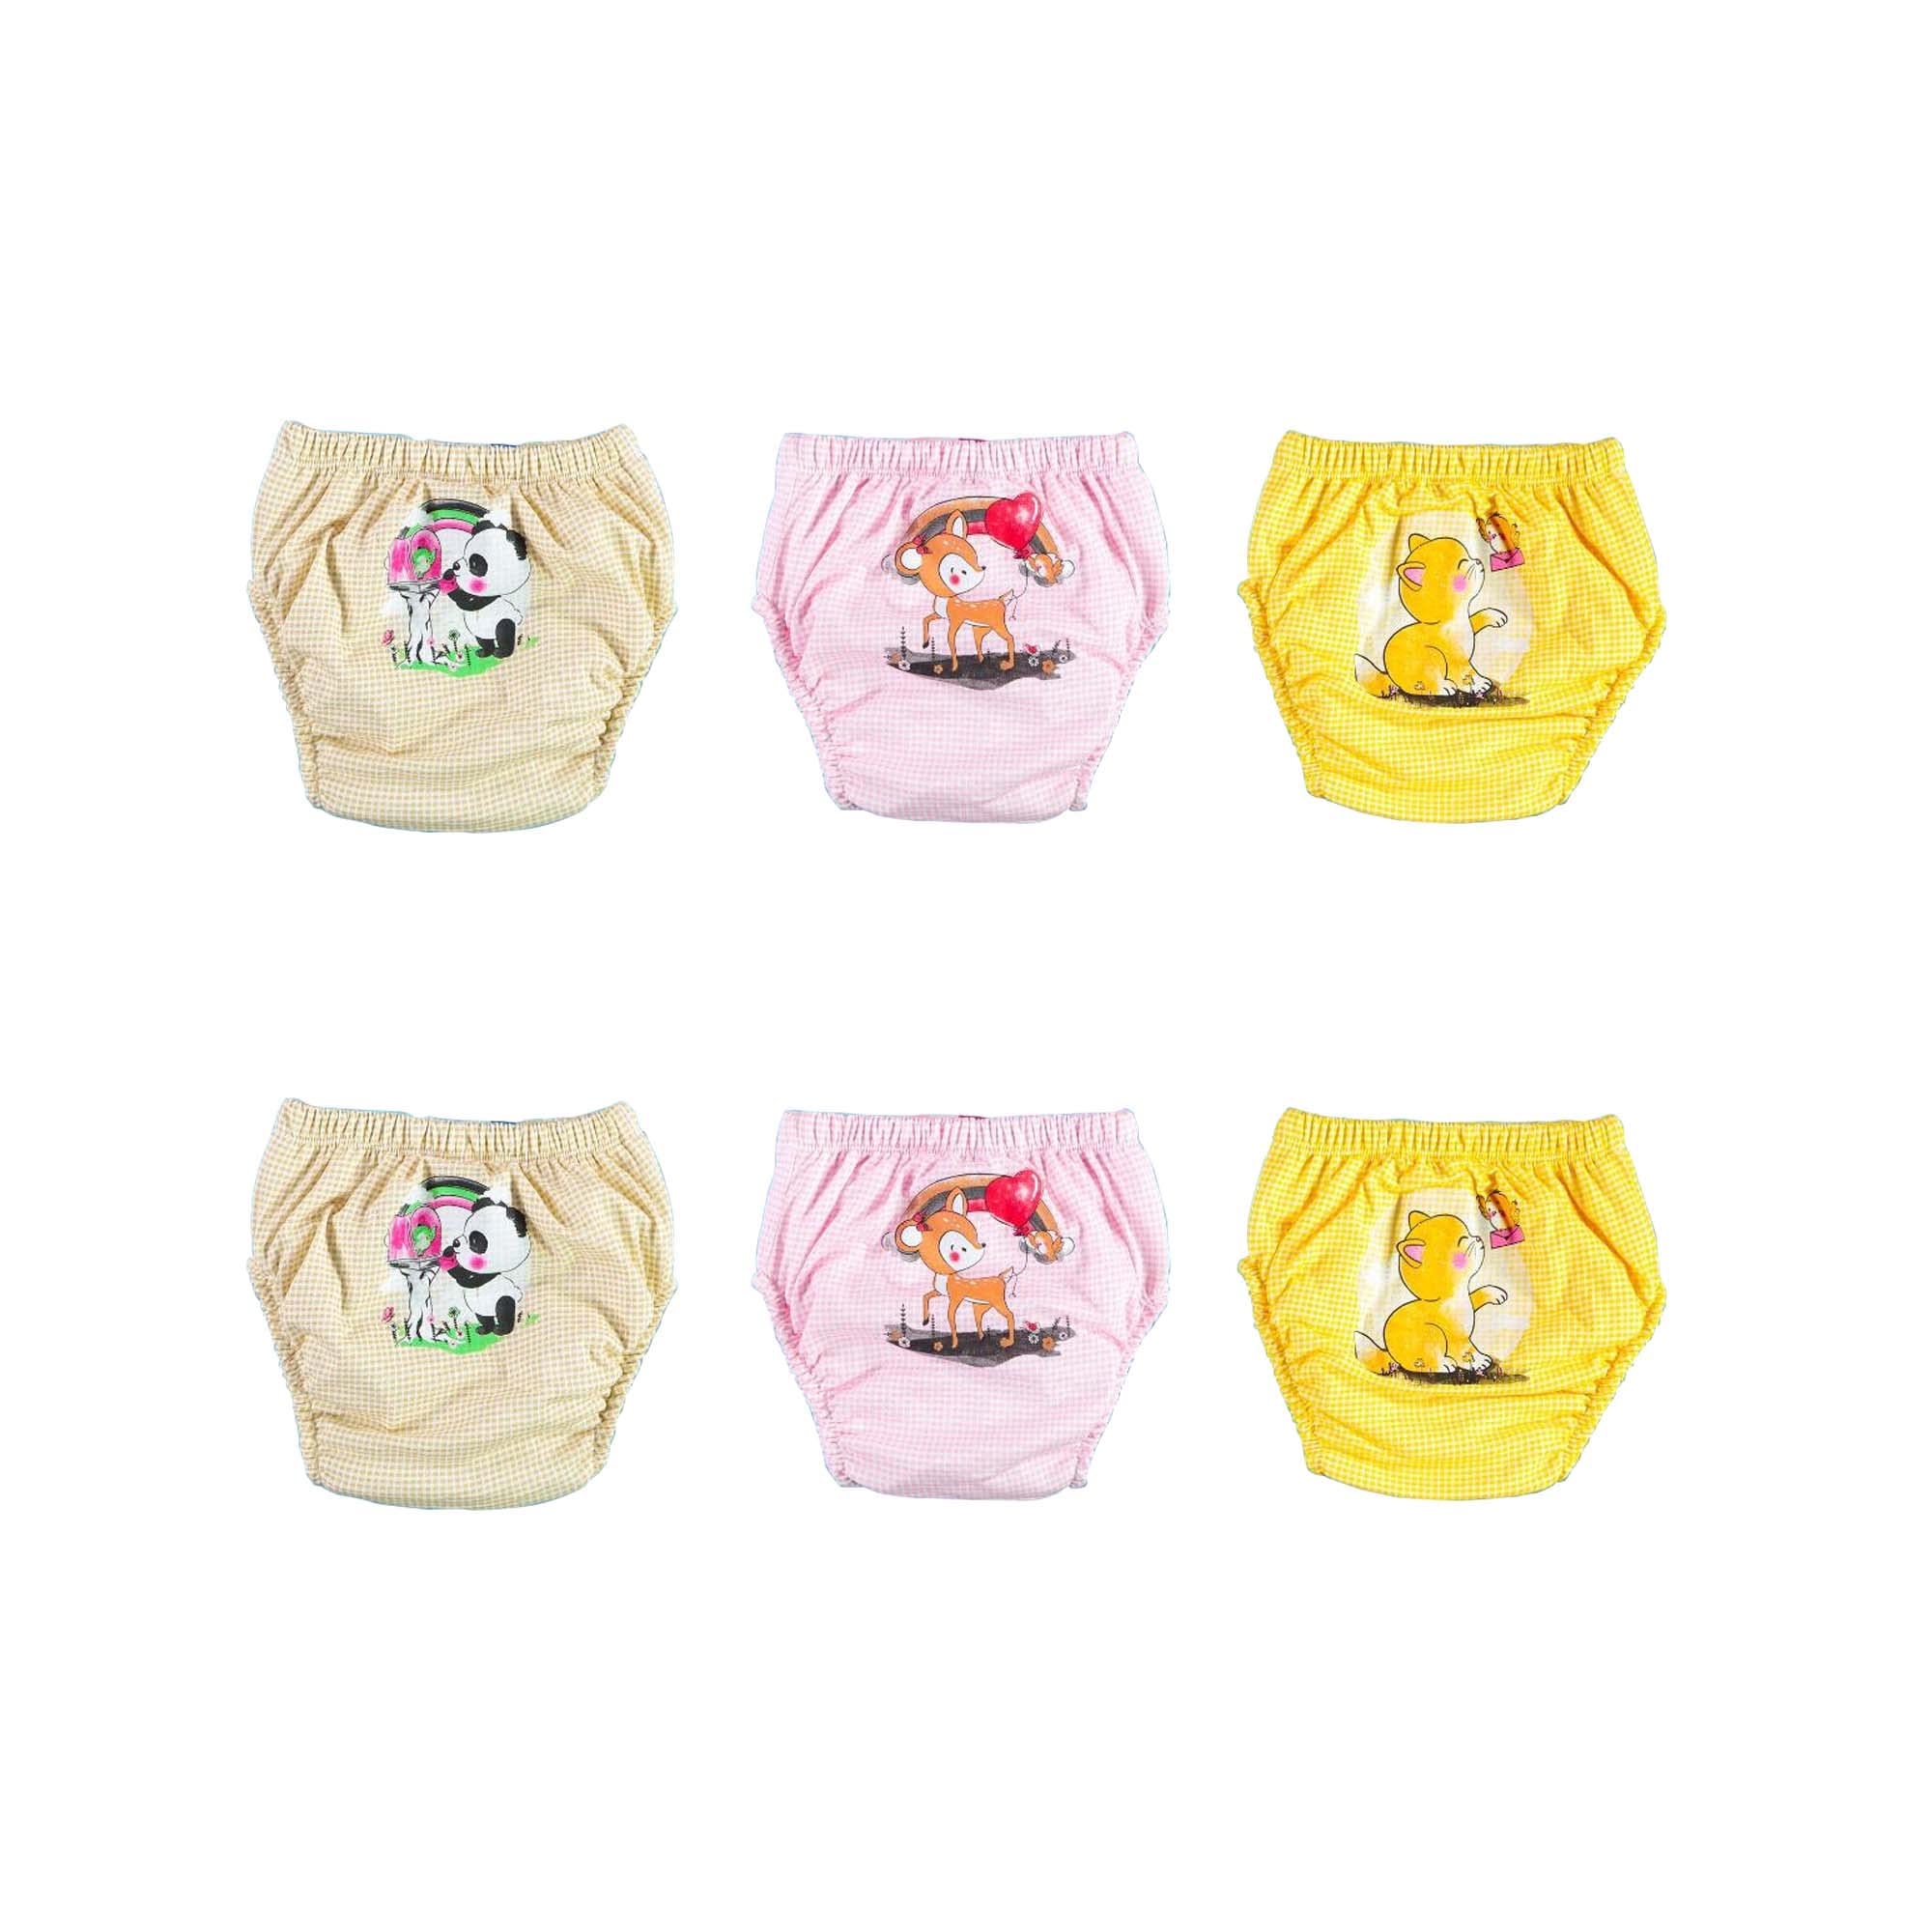 OZYOL Trainerhosen für Tröpfchentraining 6er Pack - Wiederverwendbare Kleinkinder Windelhosen Lernwindeln Trainerwindeln Baby Unterwäsche zum Sauberwerden Toilettentraining (Little Cuties, 100)